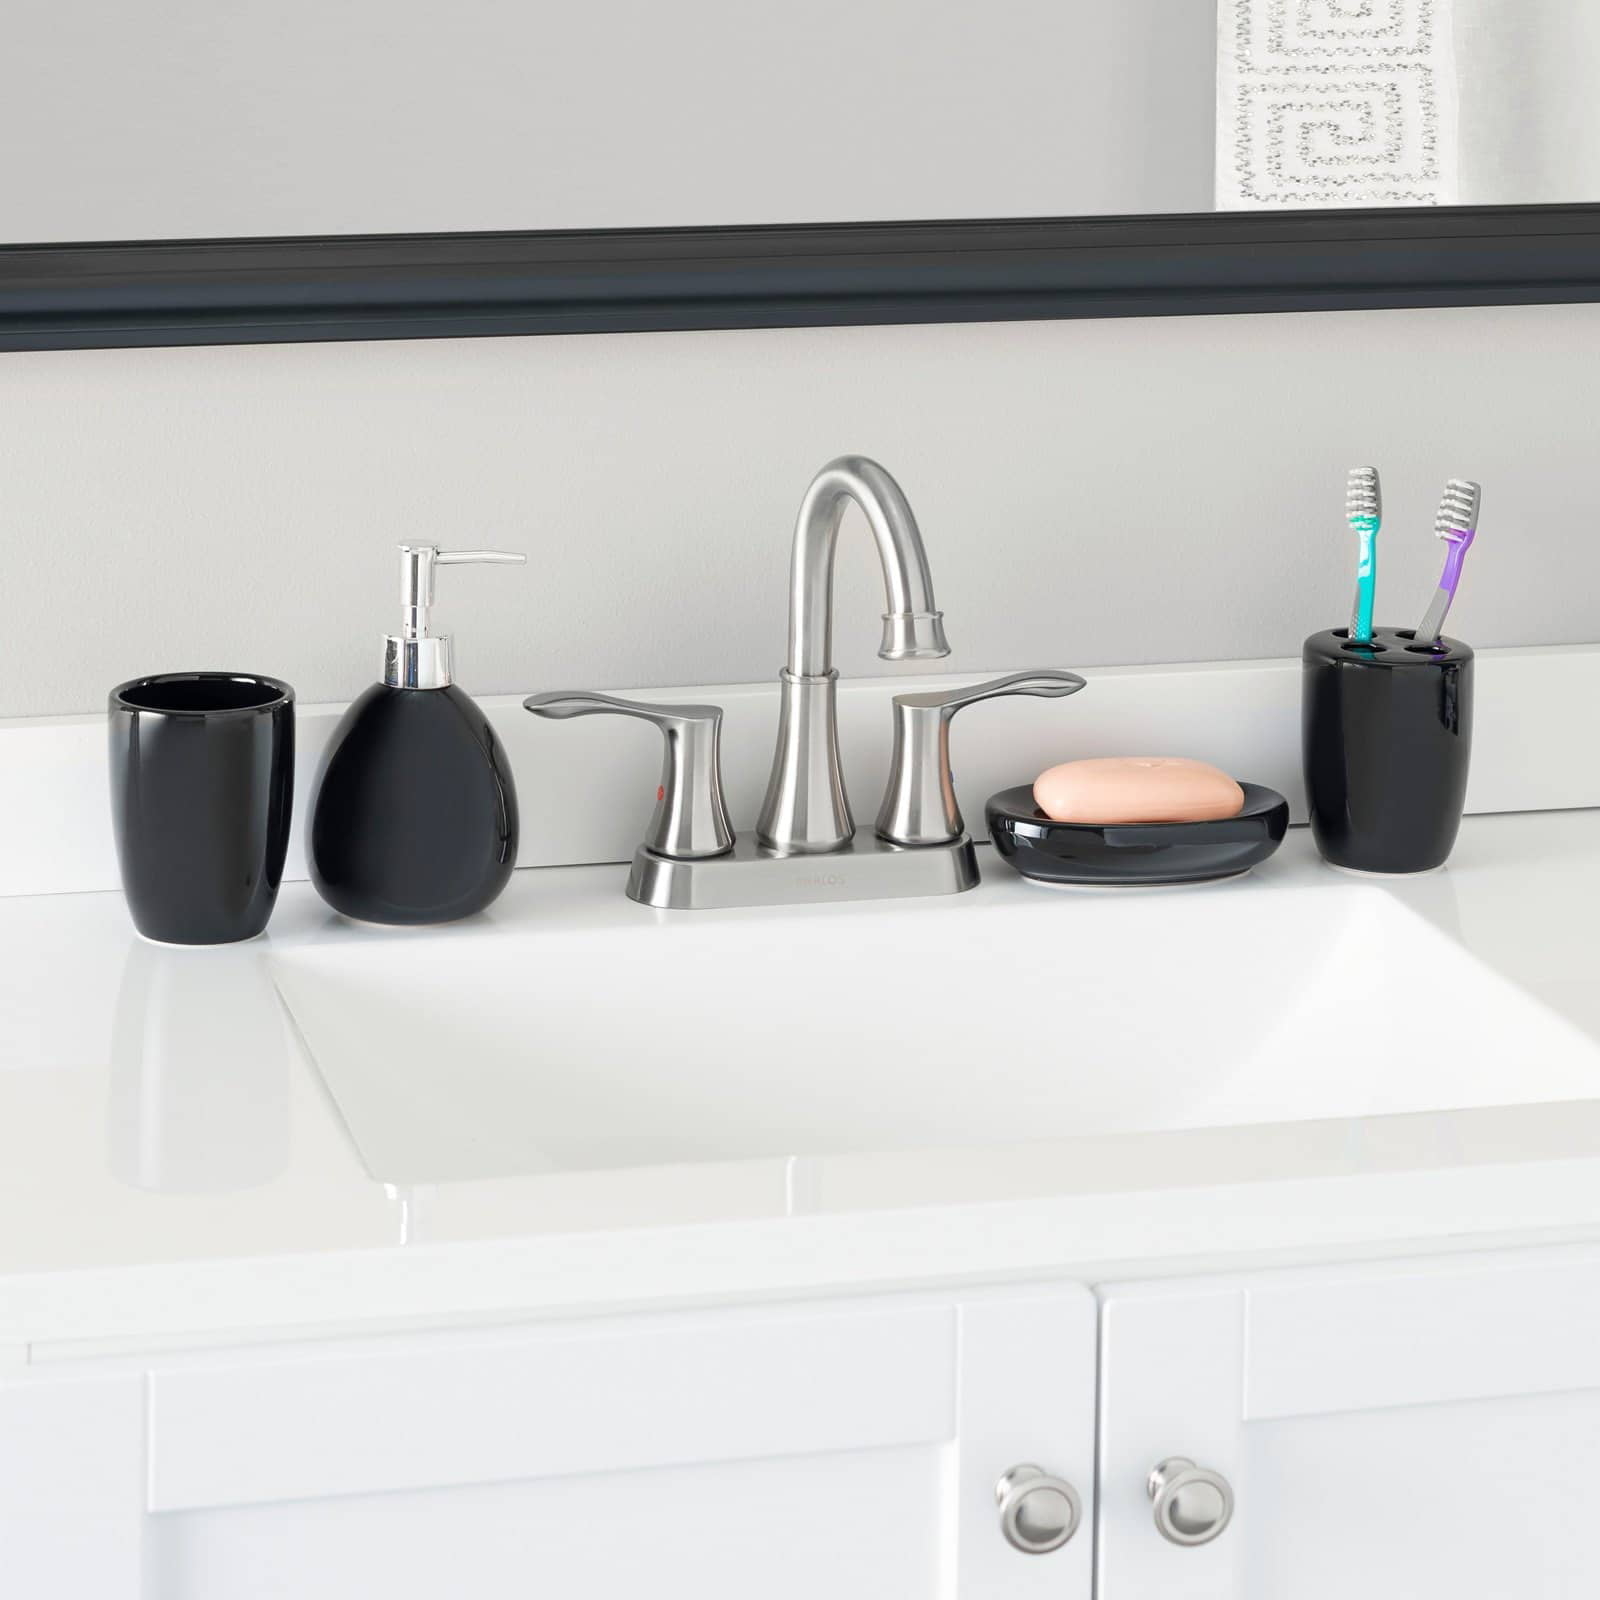 a black ceramic accessory set on a bathroom sink